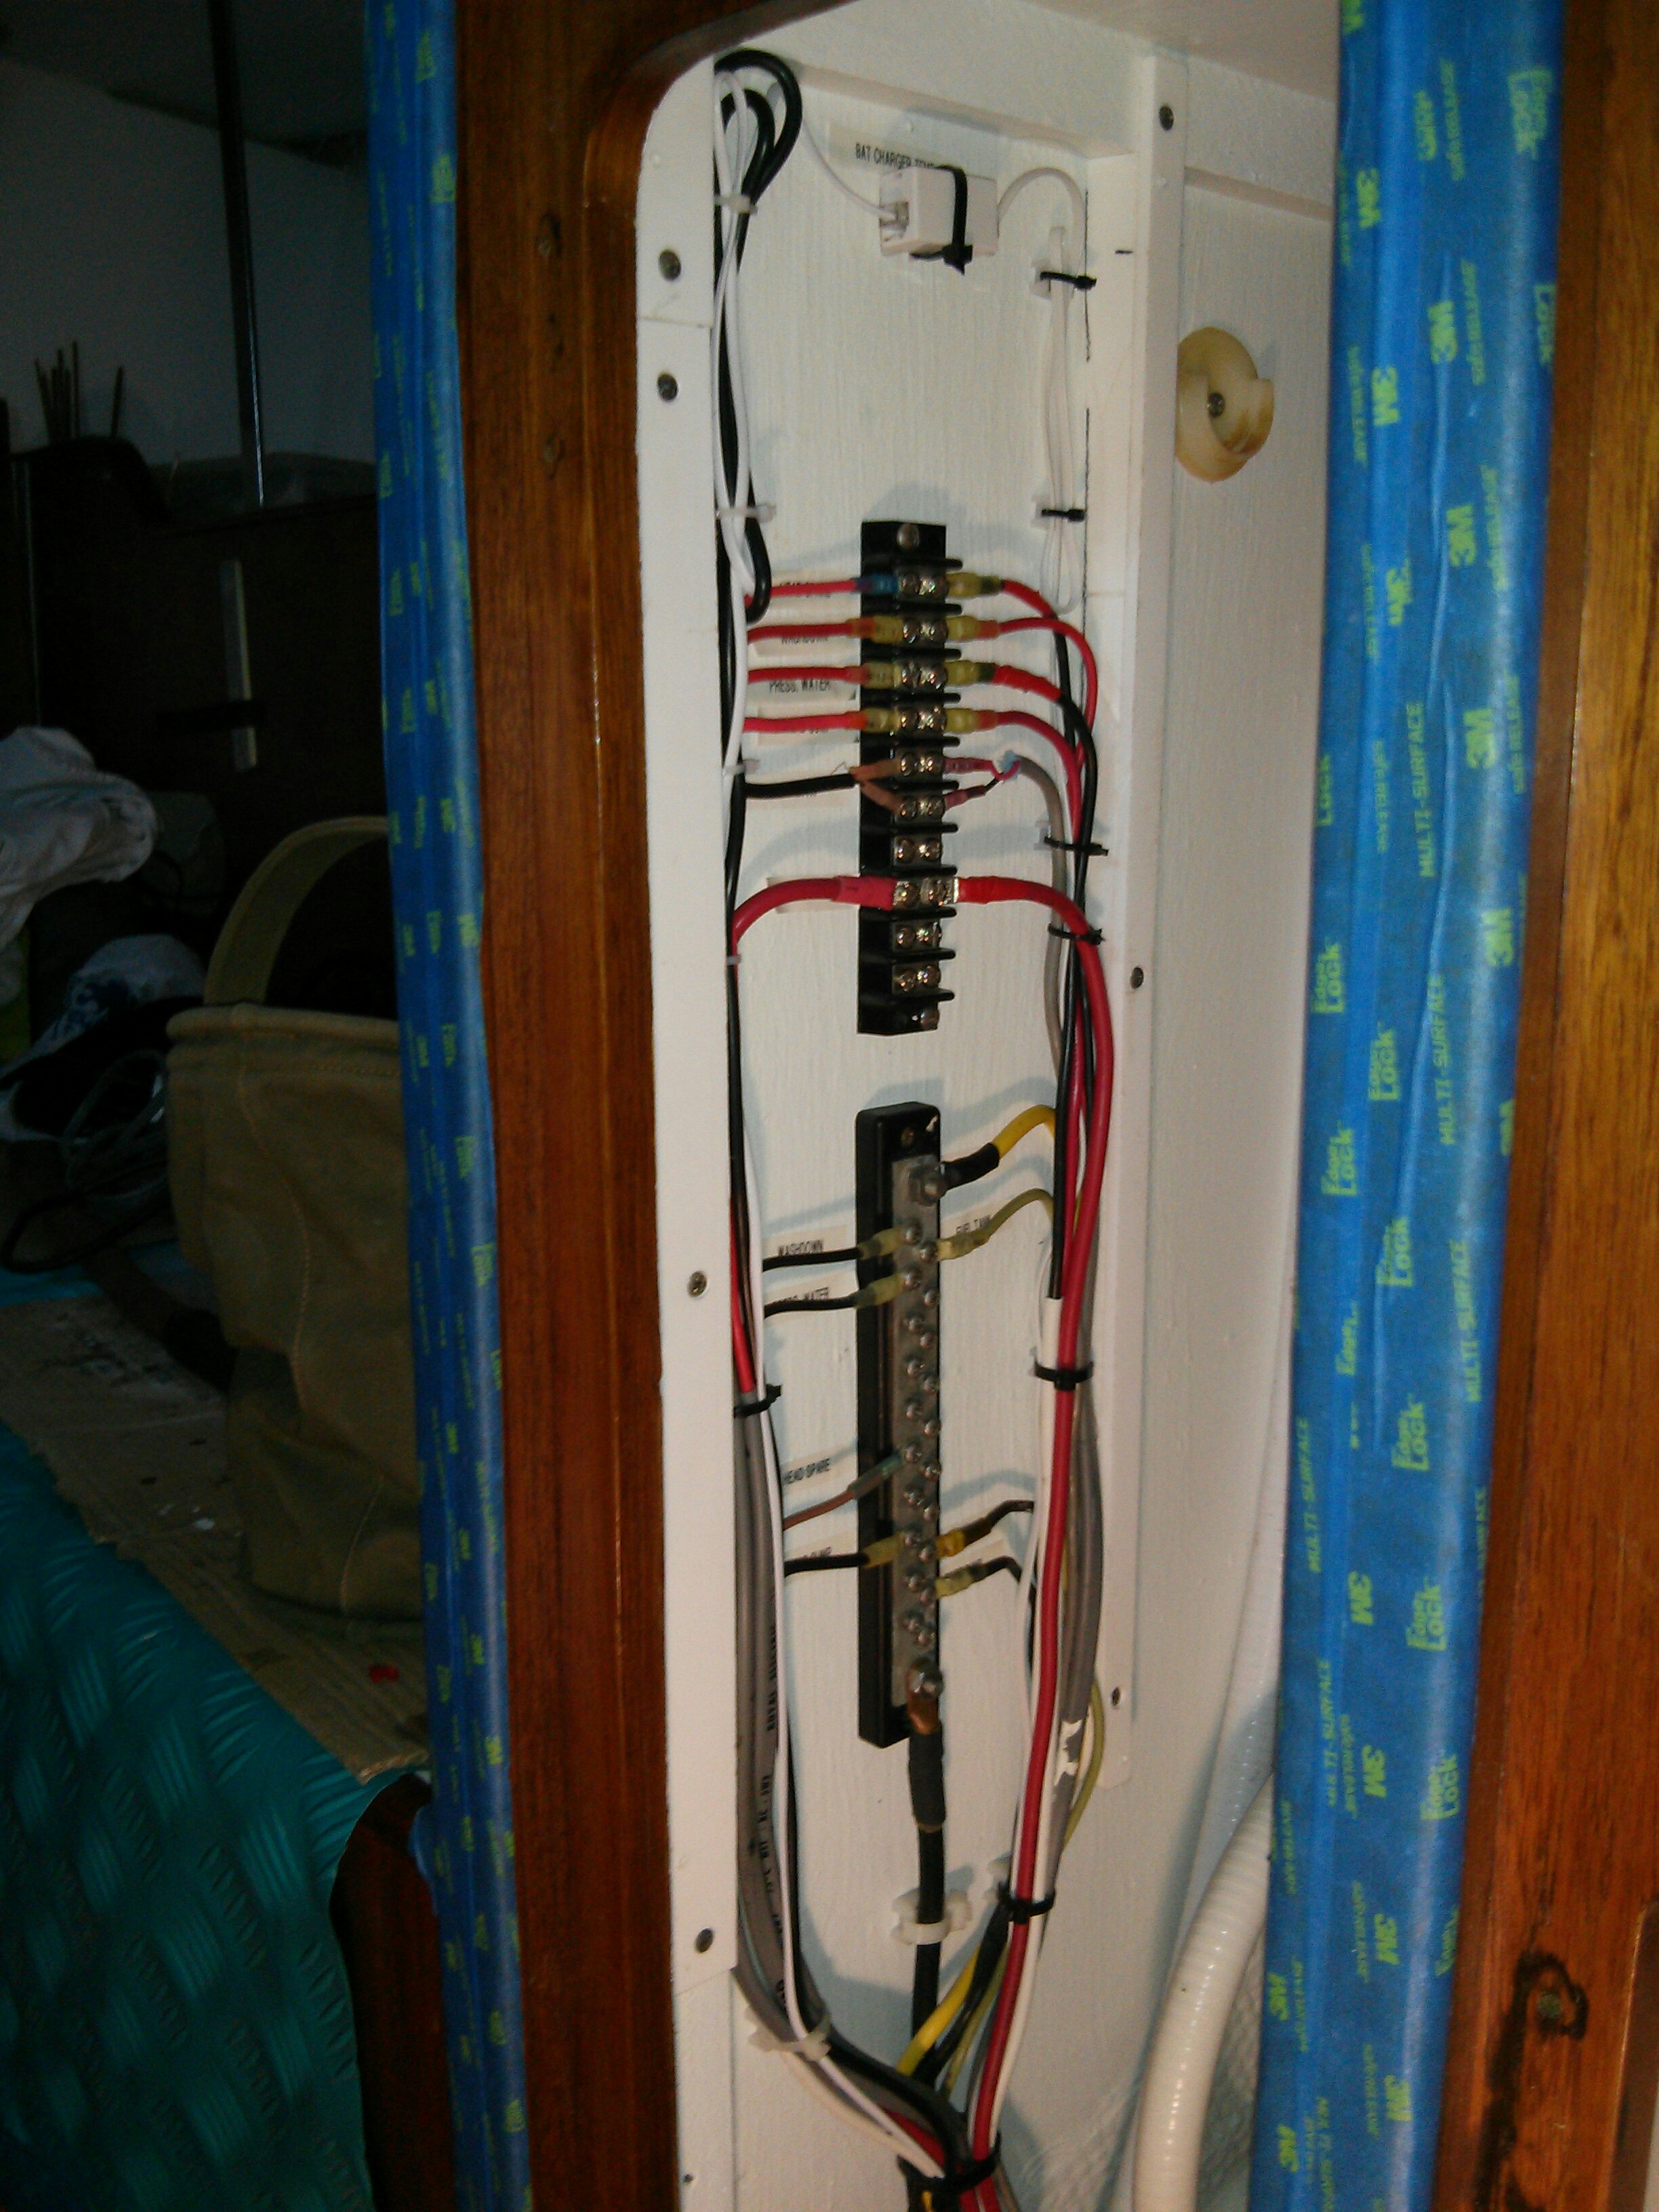 Hanging Locker Electrical sub panel